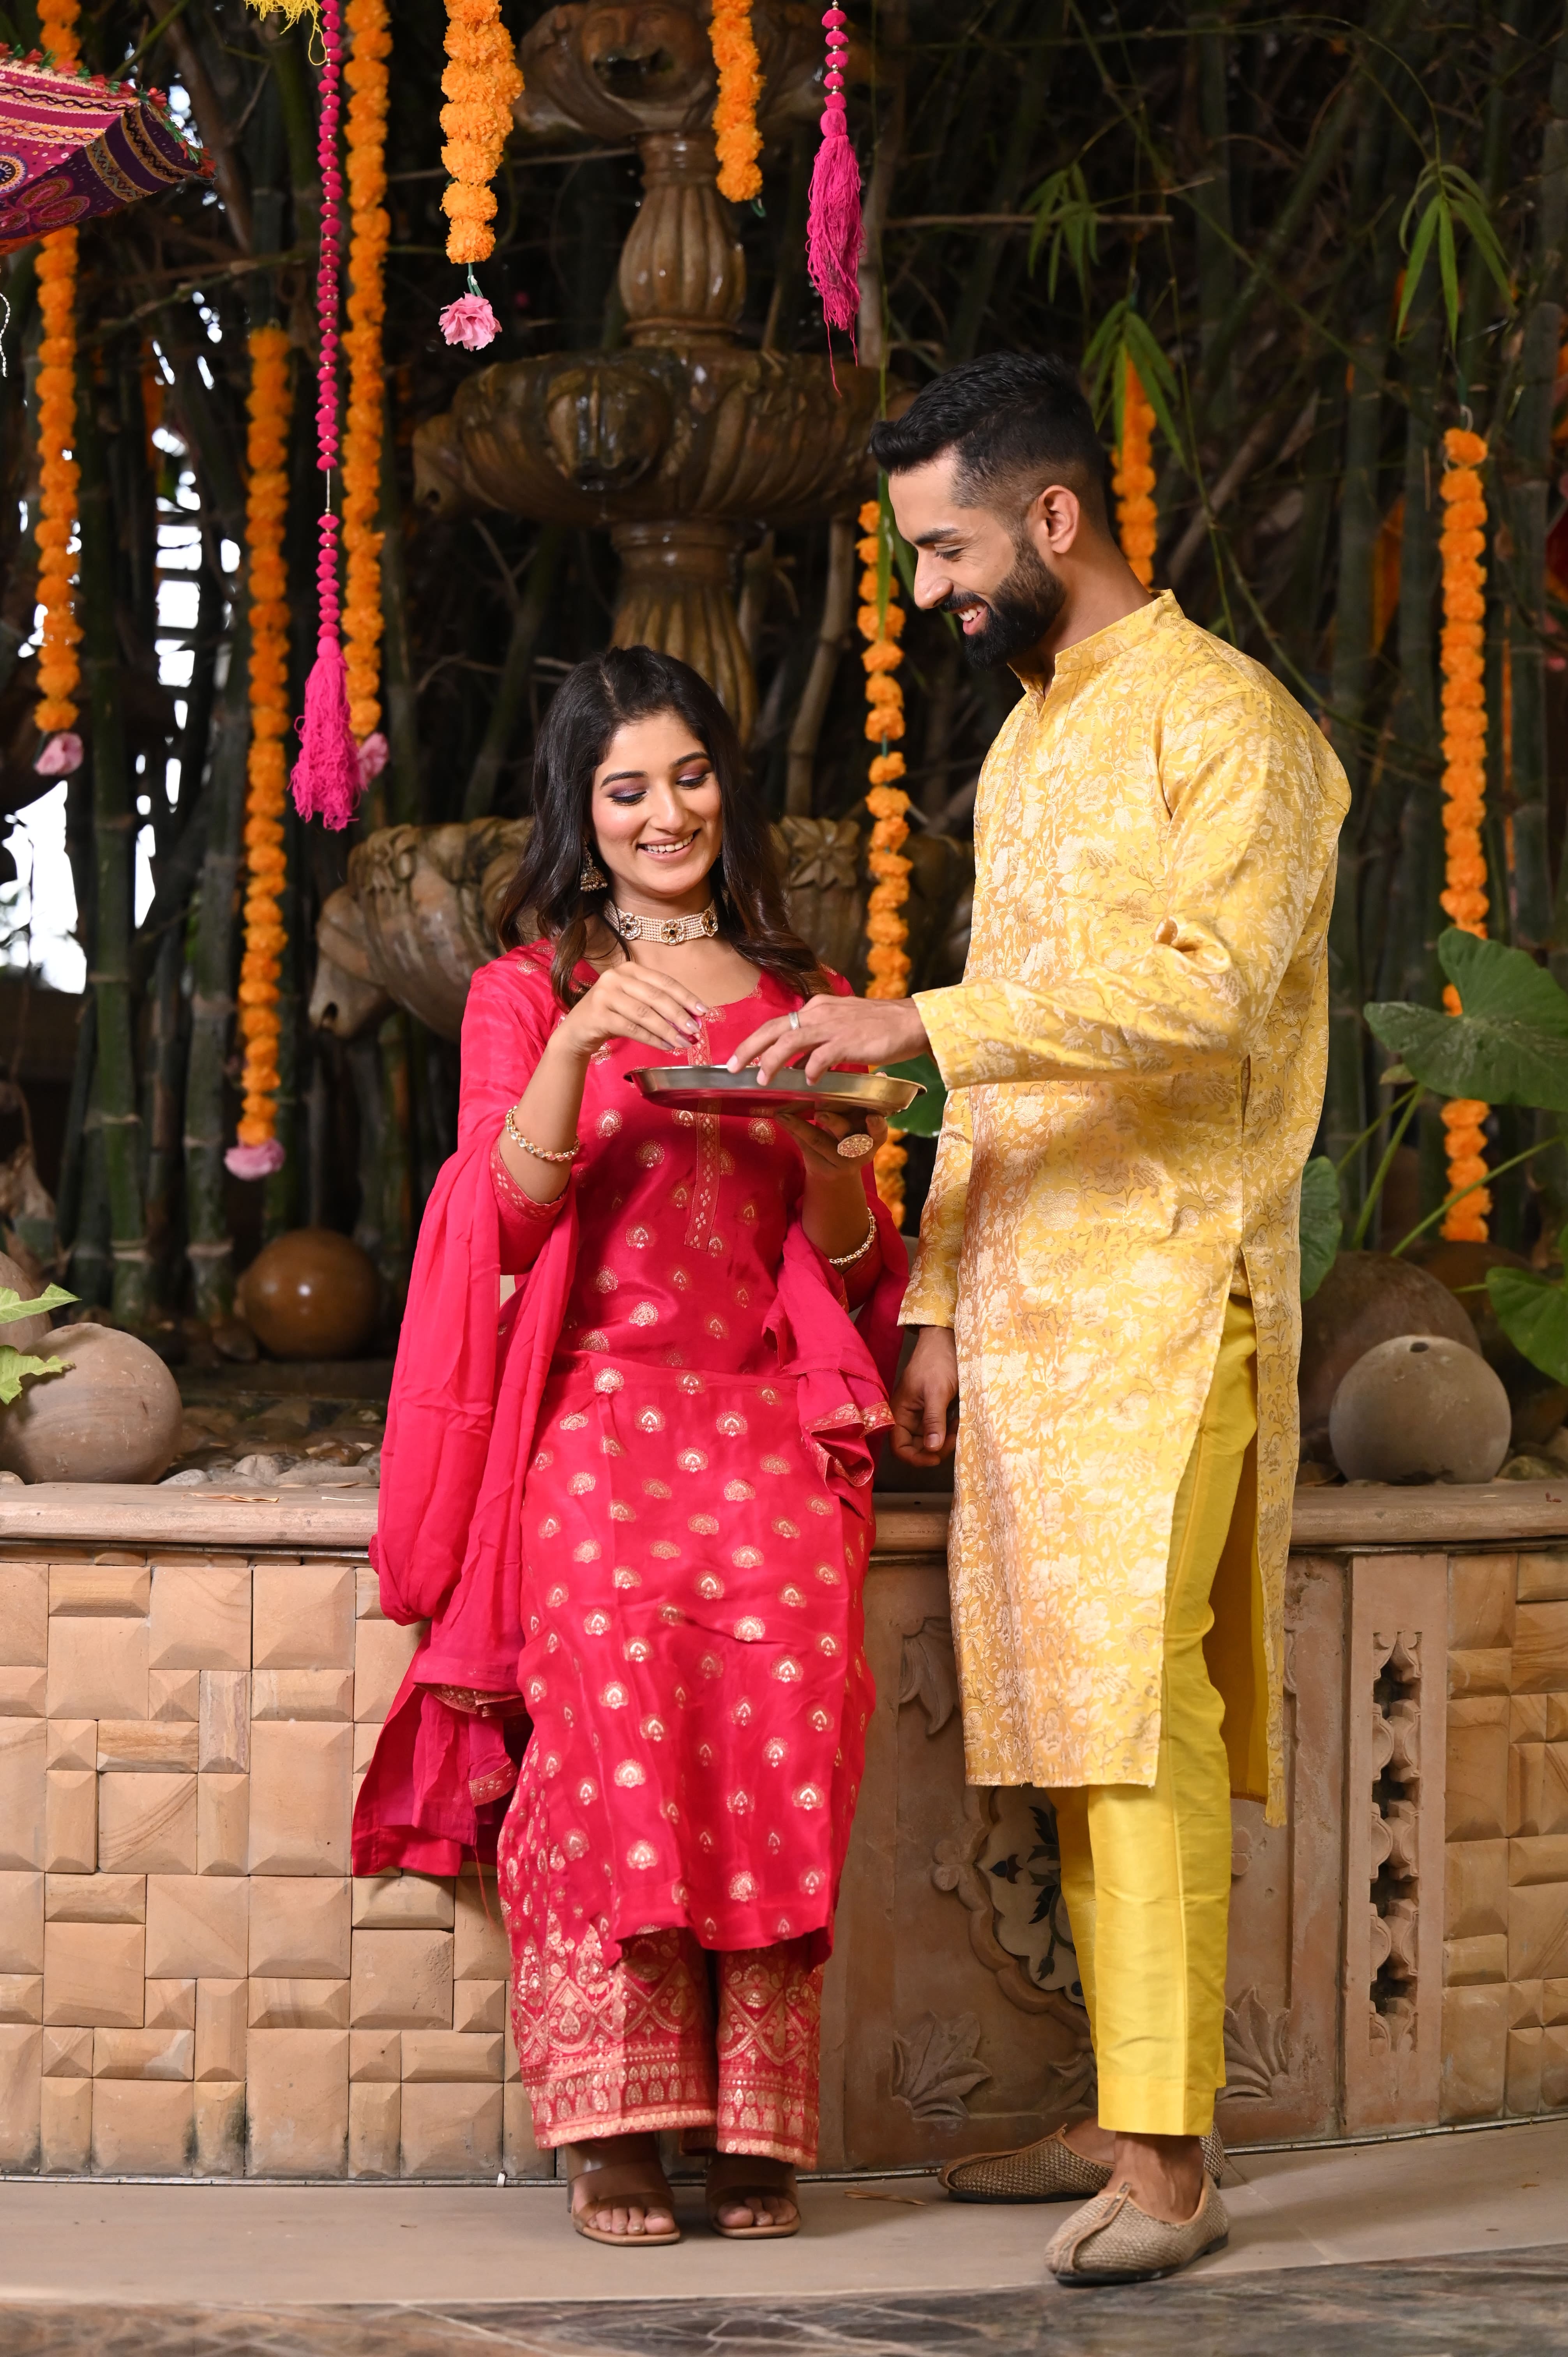 Couple Wedding Outfit Ideas | Colour Coordinated | Coordinated Outfit |  Indian wedding reception outfits, Engagement dress for bride, Bride reception  dresses